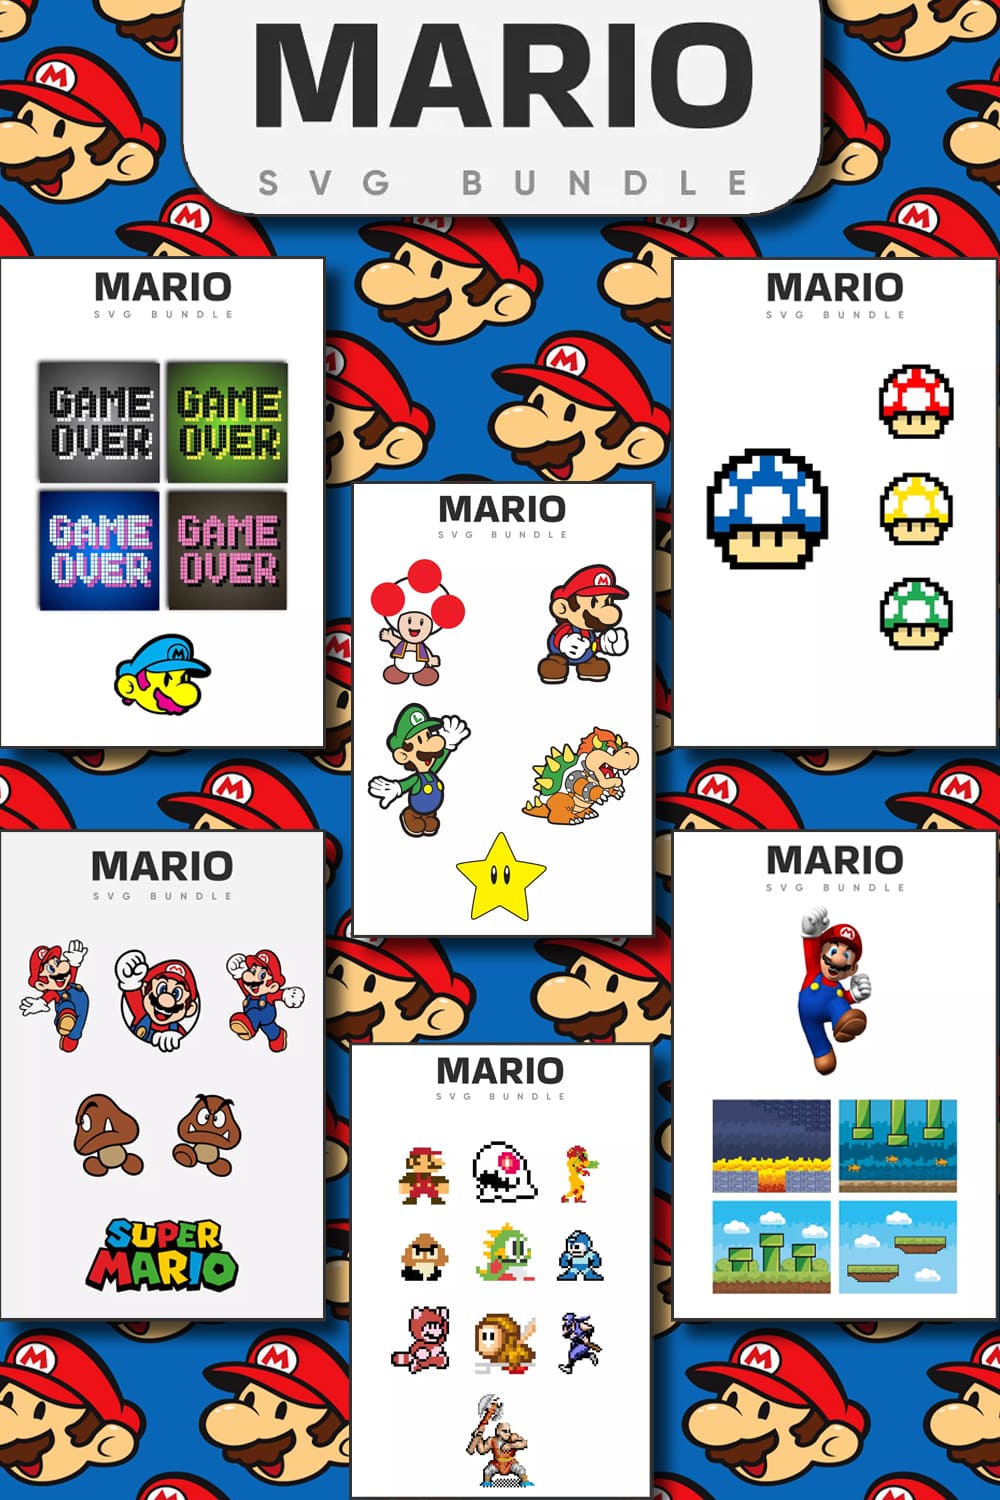 Monstrous Mario SVG Bundle Pinterest.